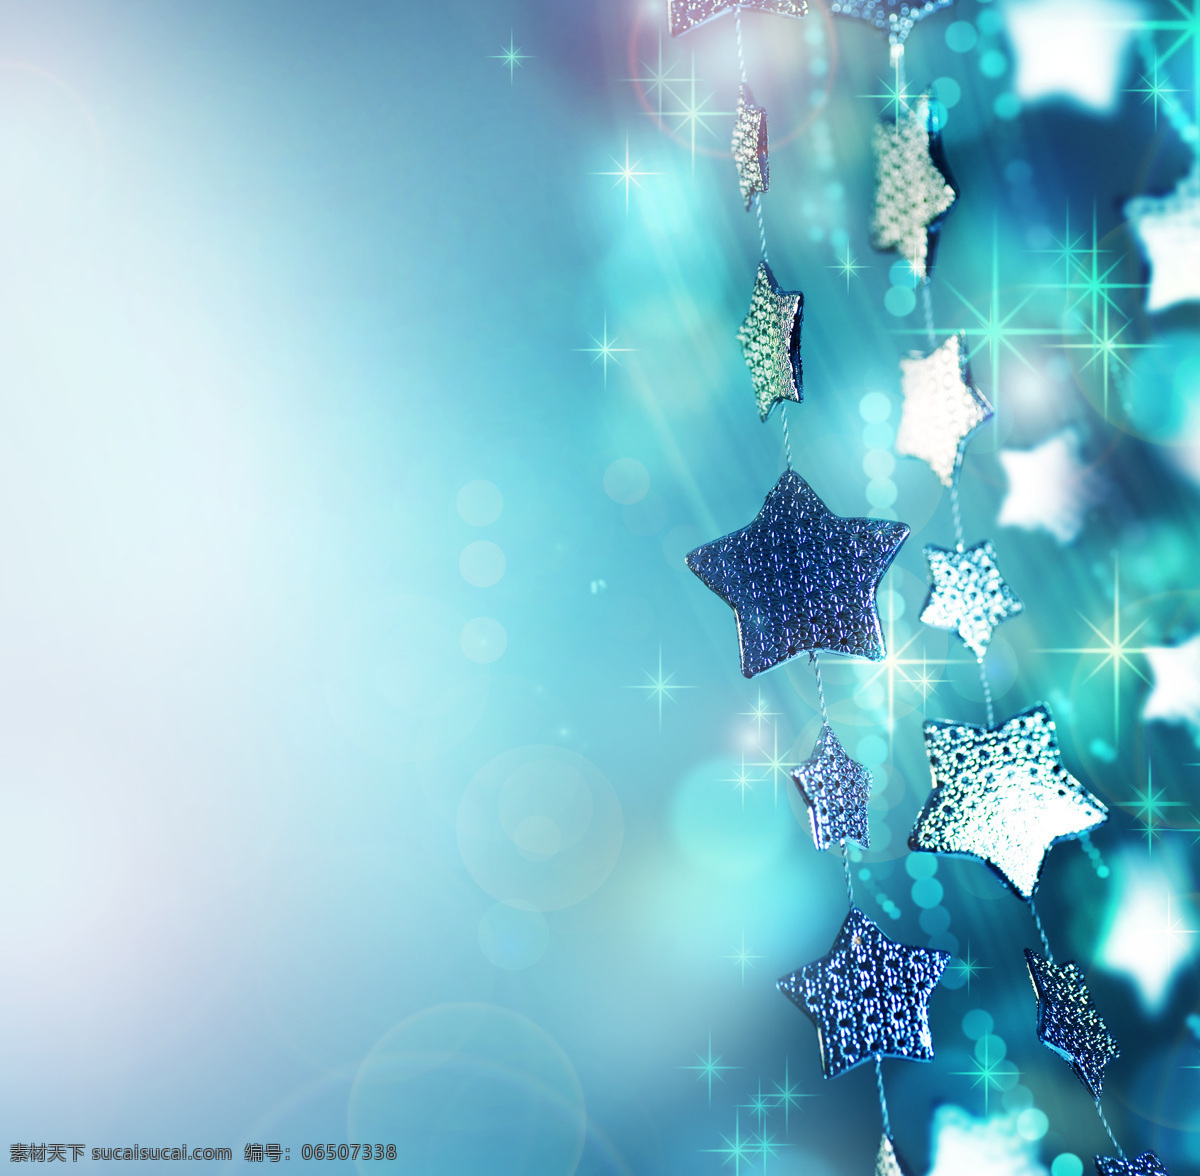 蓝色 五角星 背景 圣诞节 圣诞装饰物 圣诞节元素 蓝色背景 梦幻光斑 节日庆典 生活百科